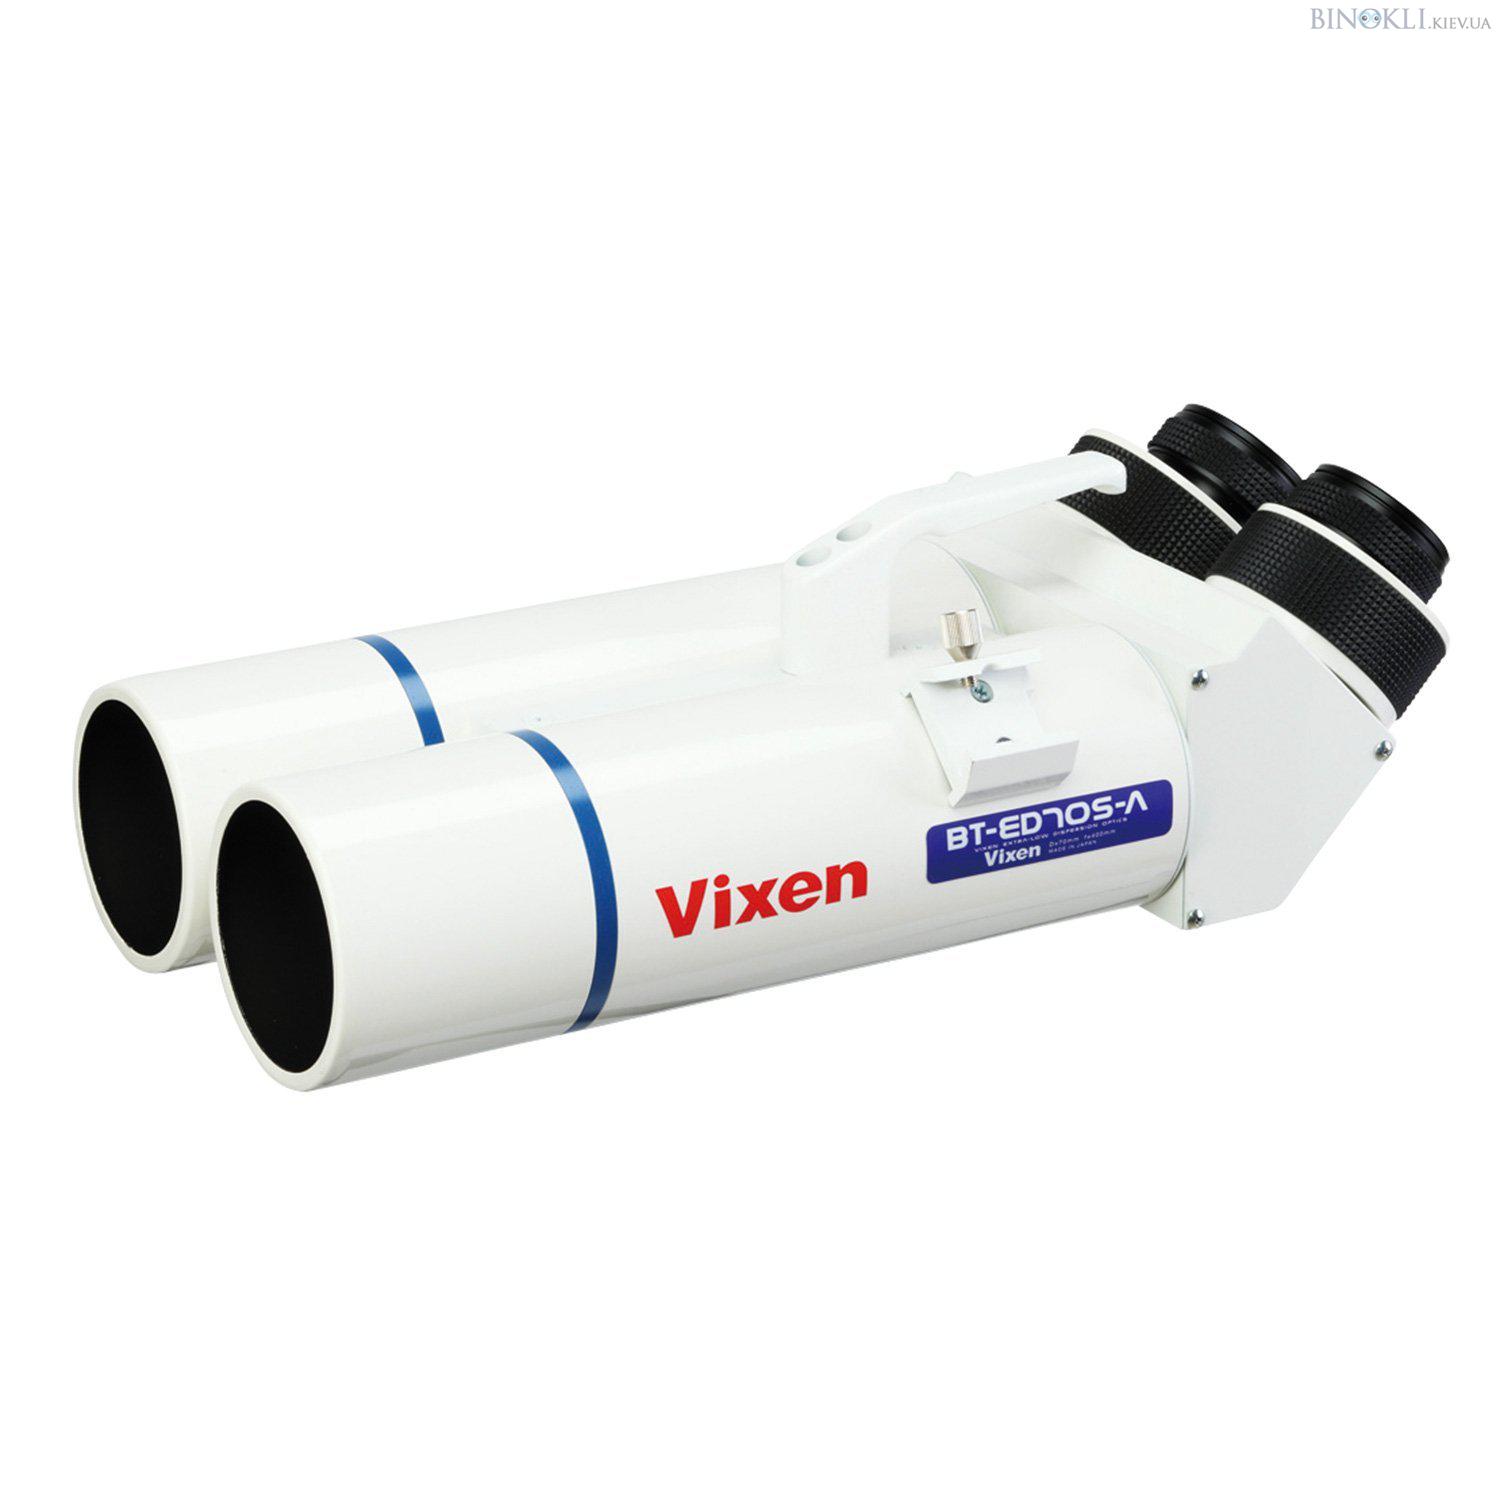 Бинокль астрономический Vixen BT-ED70S-A